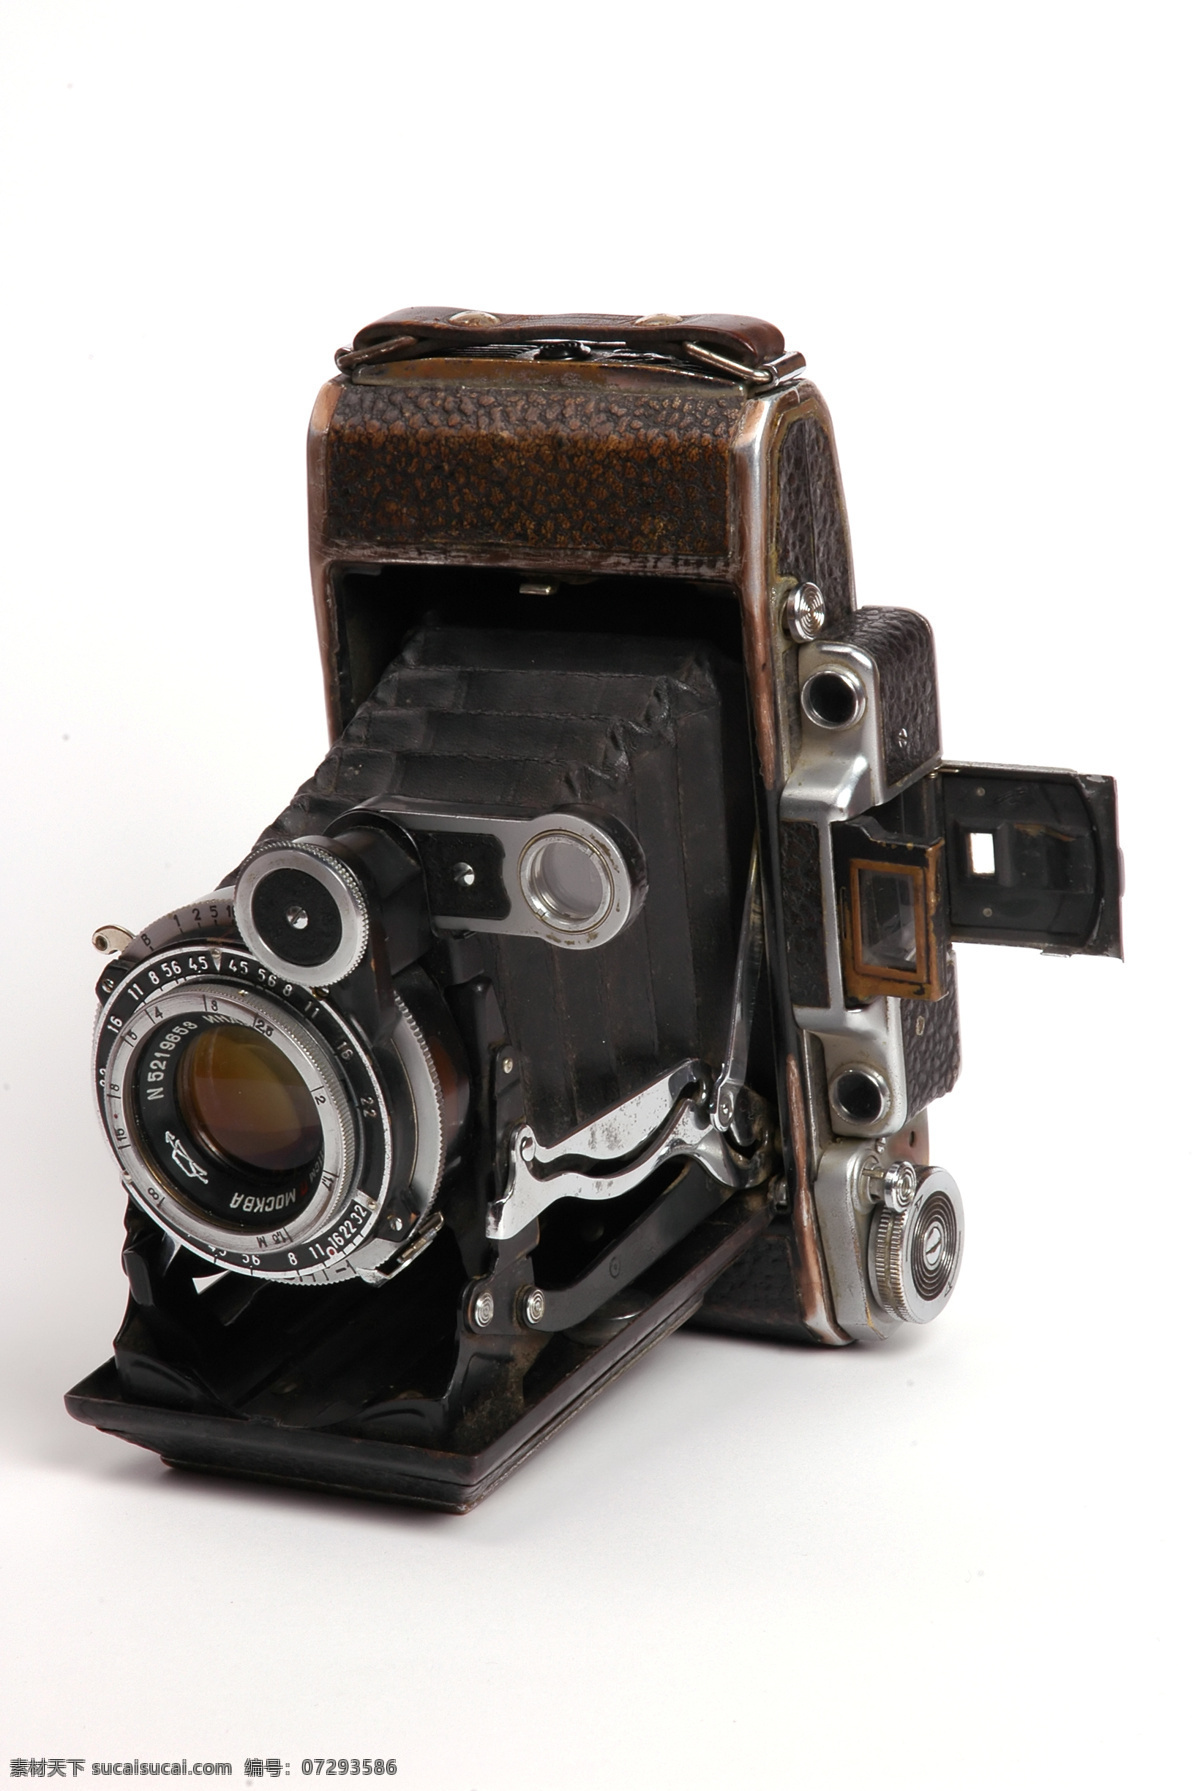 单反 古老 家居生活 胶片 经典胶片相机 生活百科 收藏品 经典 相机 皮腔 旁轴 psd源文件